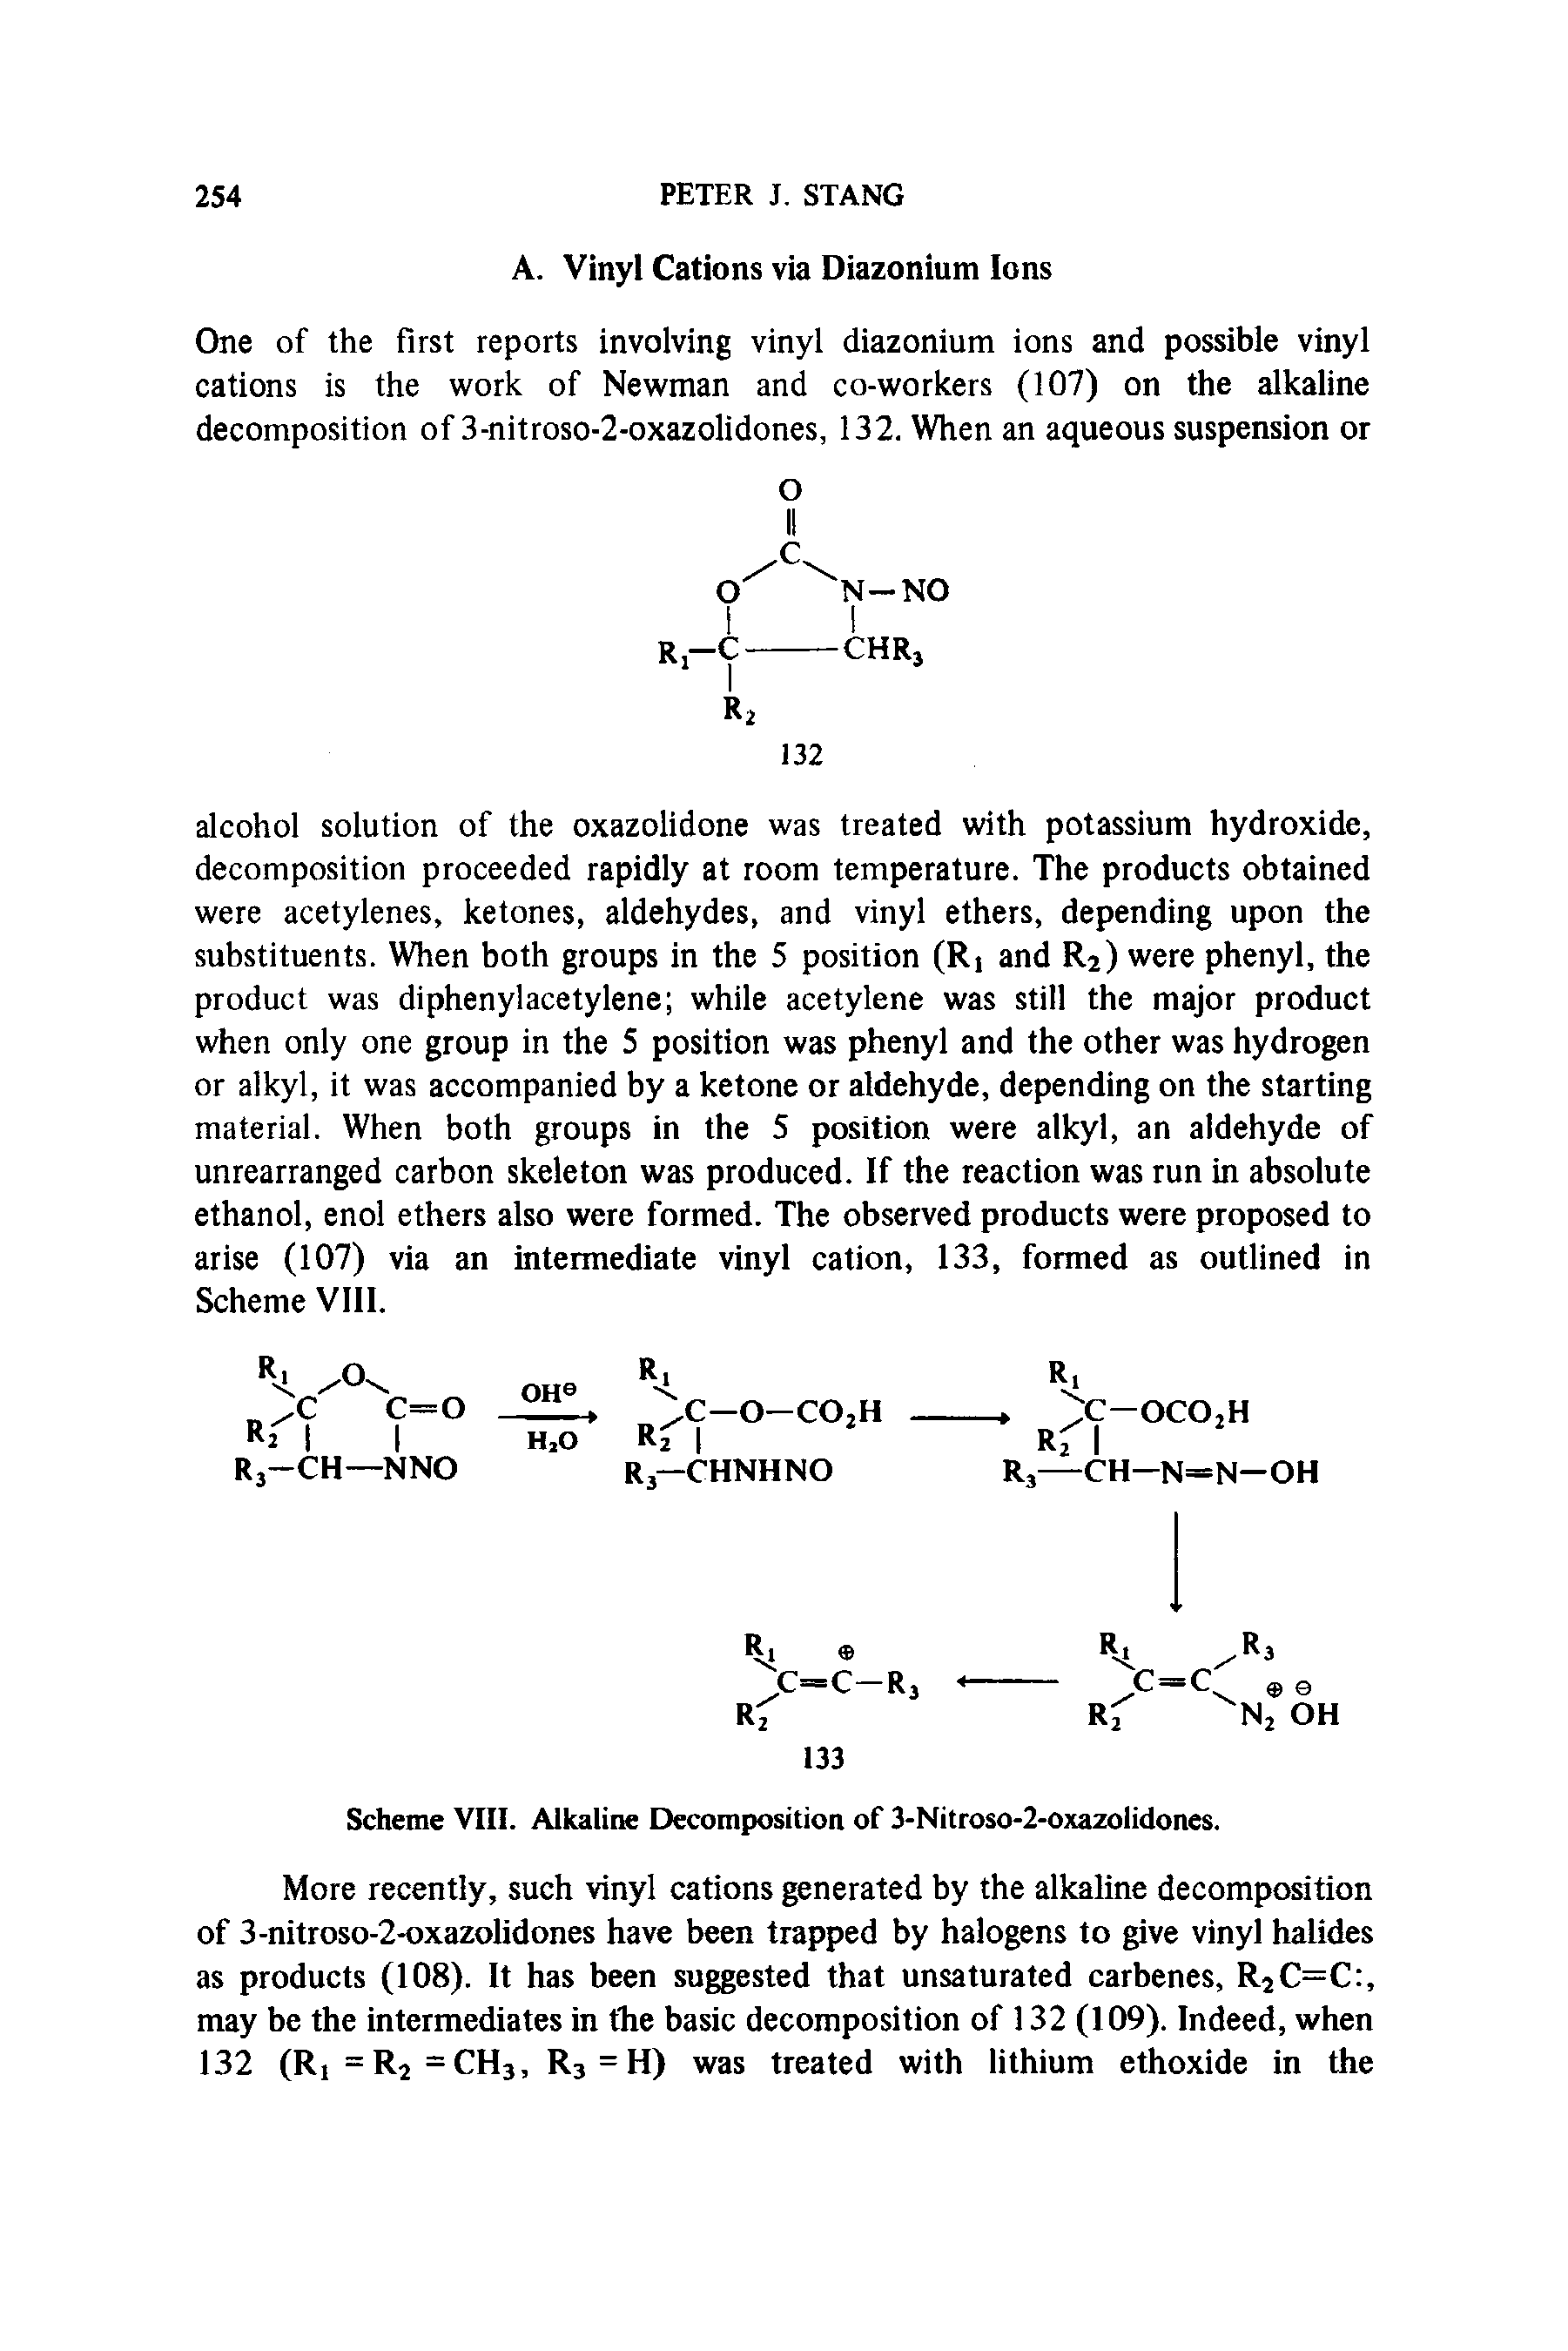 Scheme VIII. Alkaline Decomposition of 3-Nitroso-2-oxazolidones.